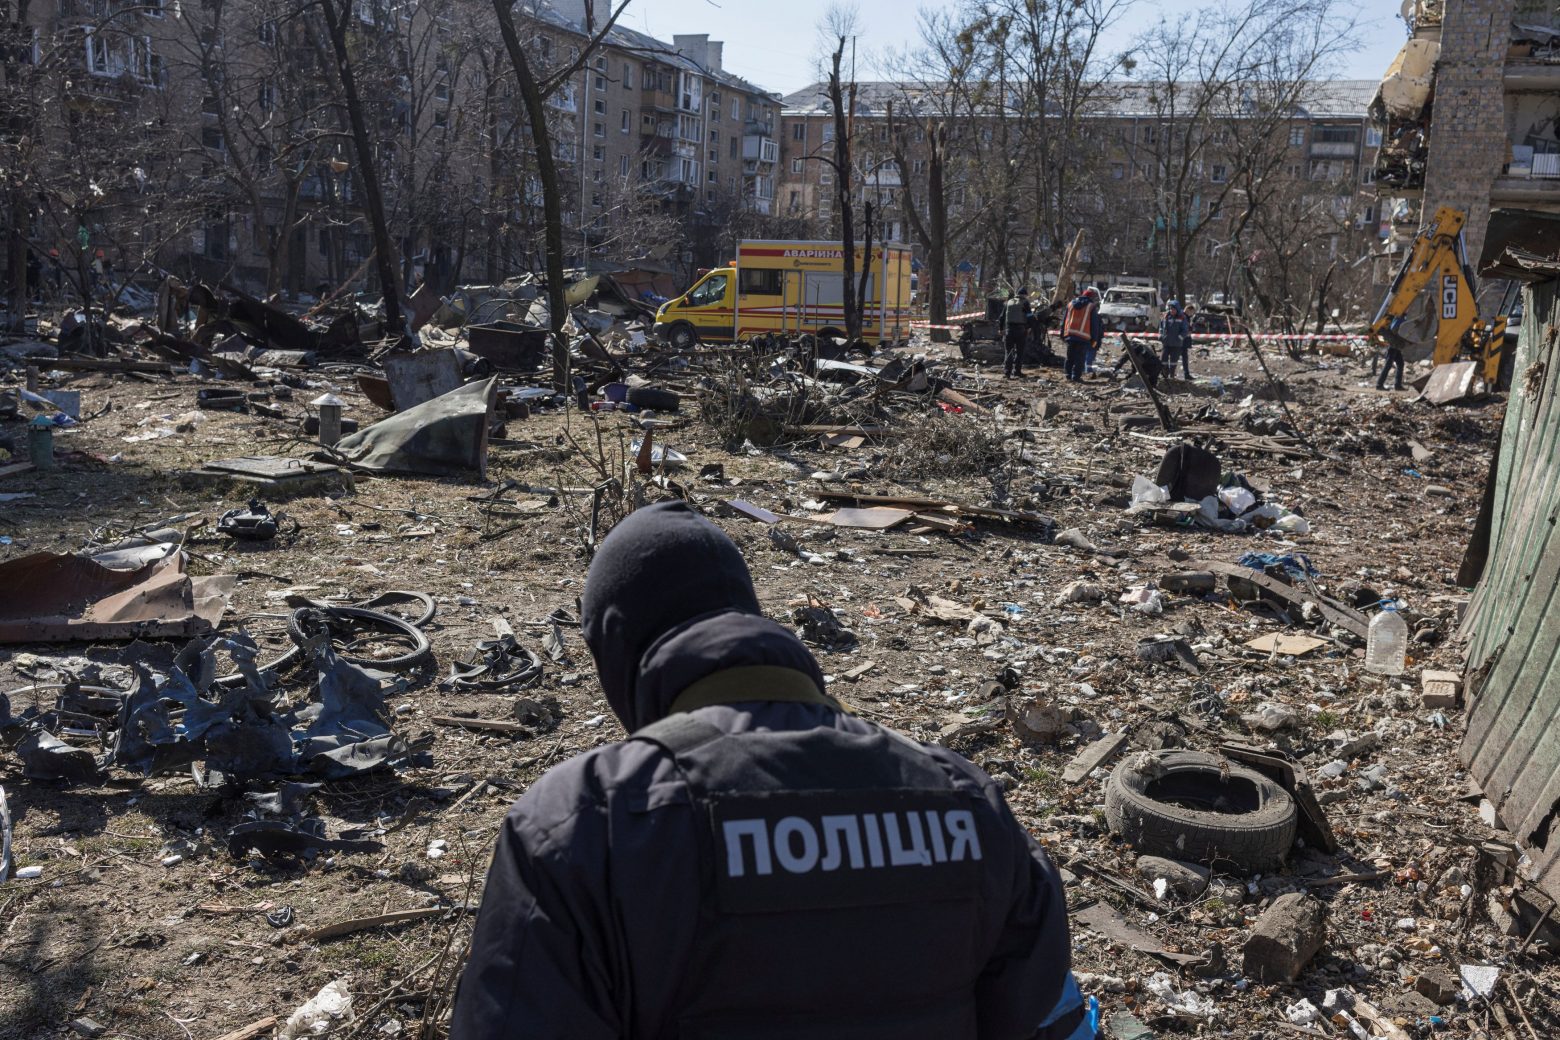 Ουκρανία: Τουλάχιστον 816 άμαχοι νεκροί σύμφωνα με τον ΟΗΕ - Τι υποστηρίζουν οι ουκρανικές Αρχές